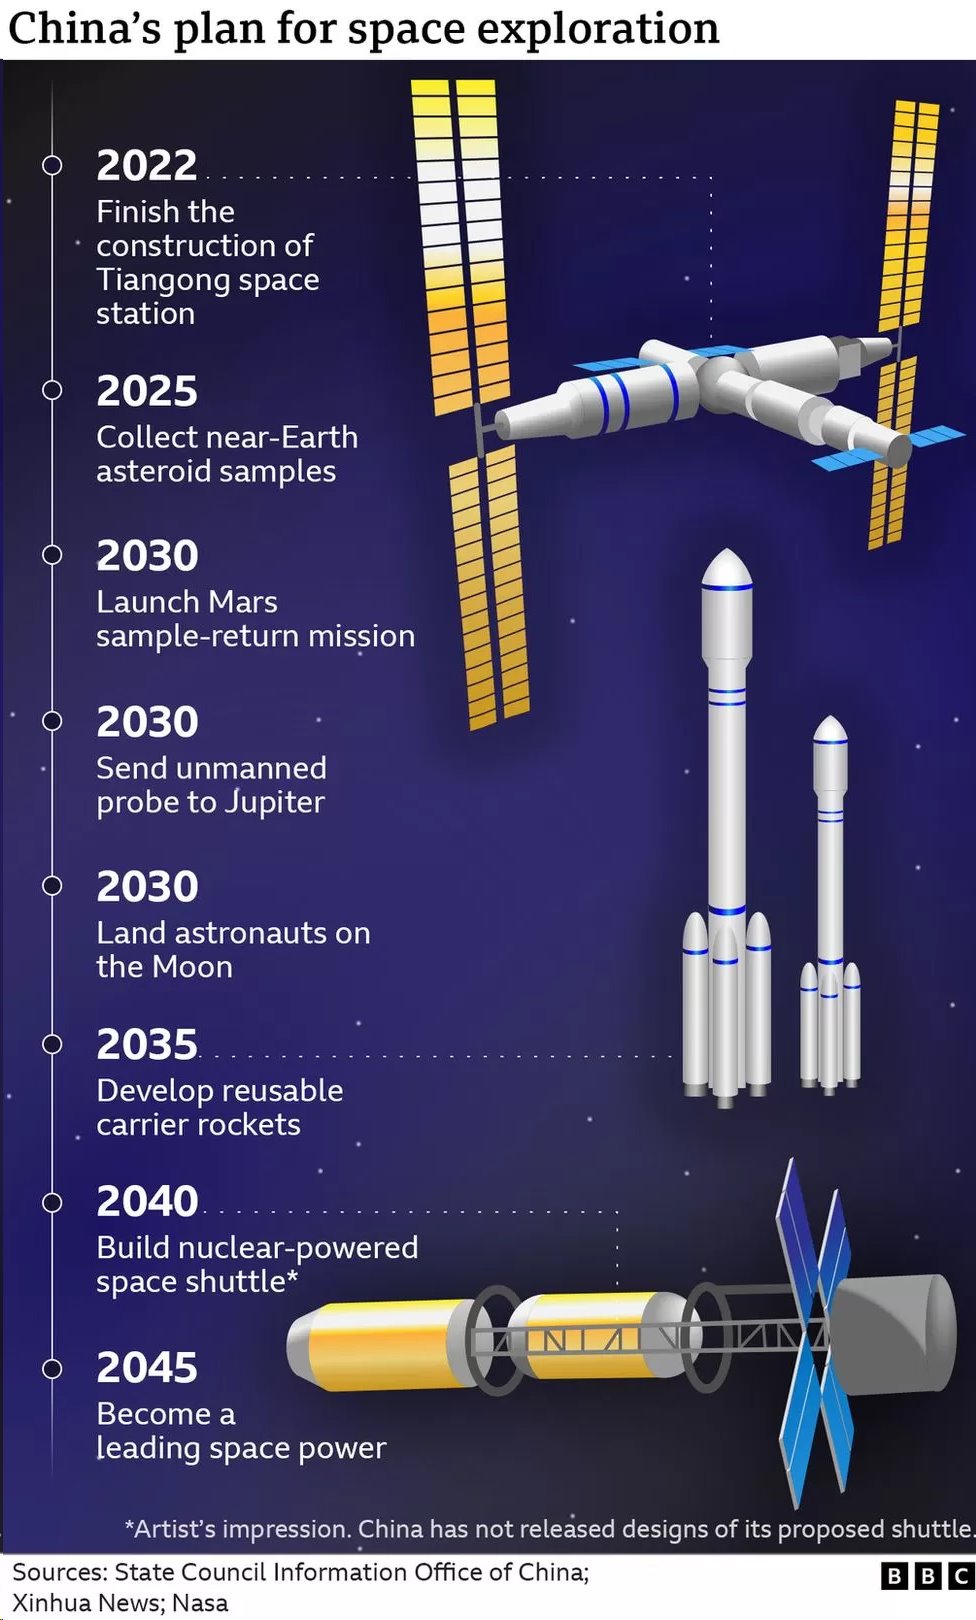 [출처: BBC] 2045년까지 우주 최강국이 되겠다는 중국의 향후 우주 탐사 계획